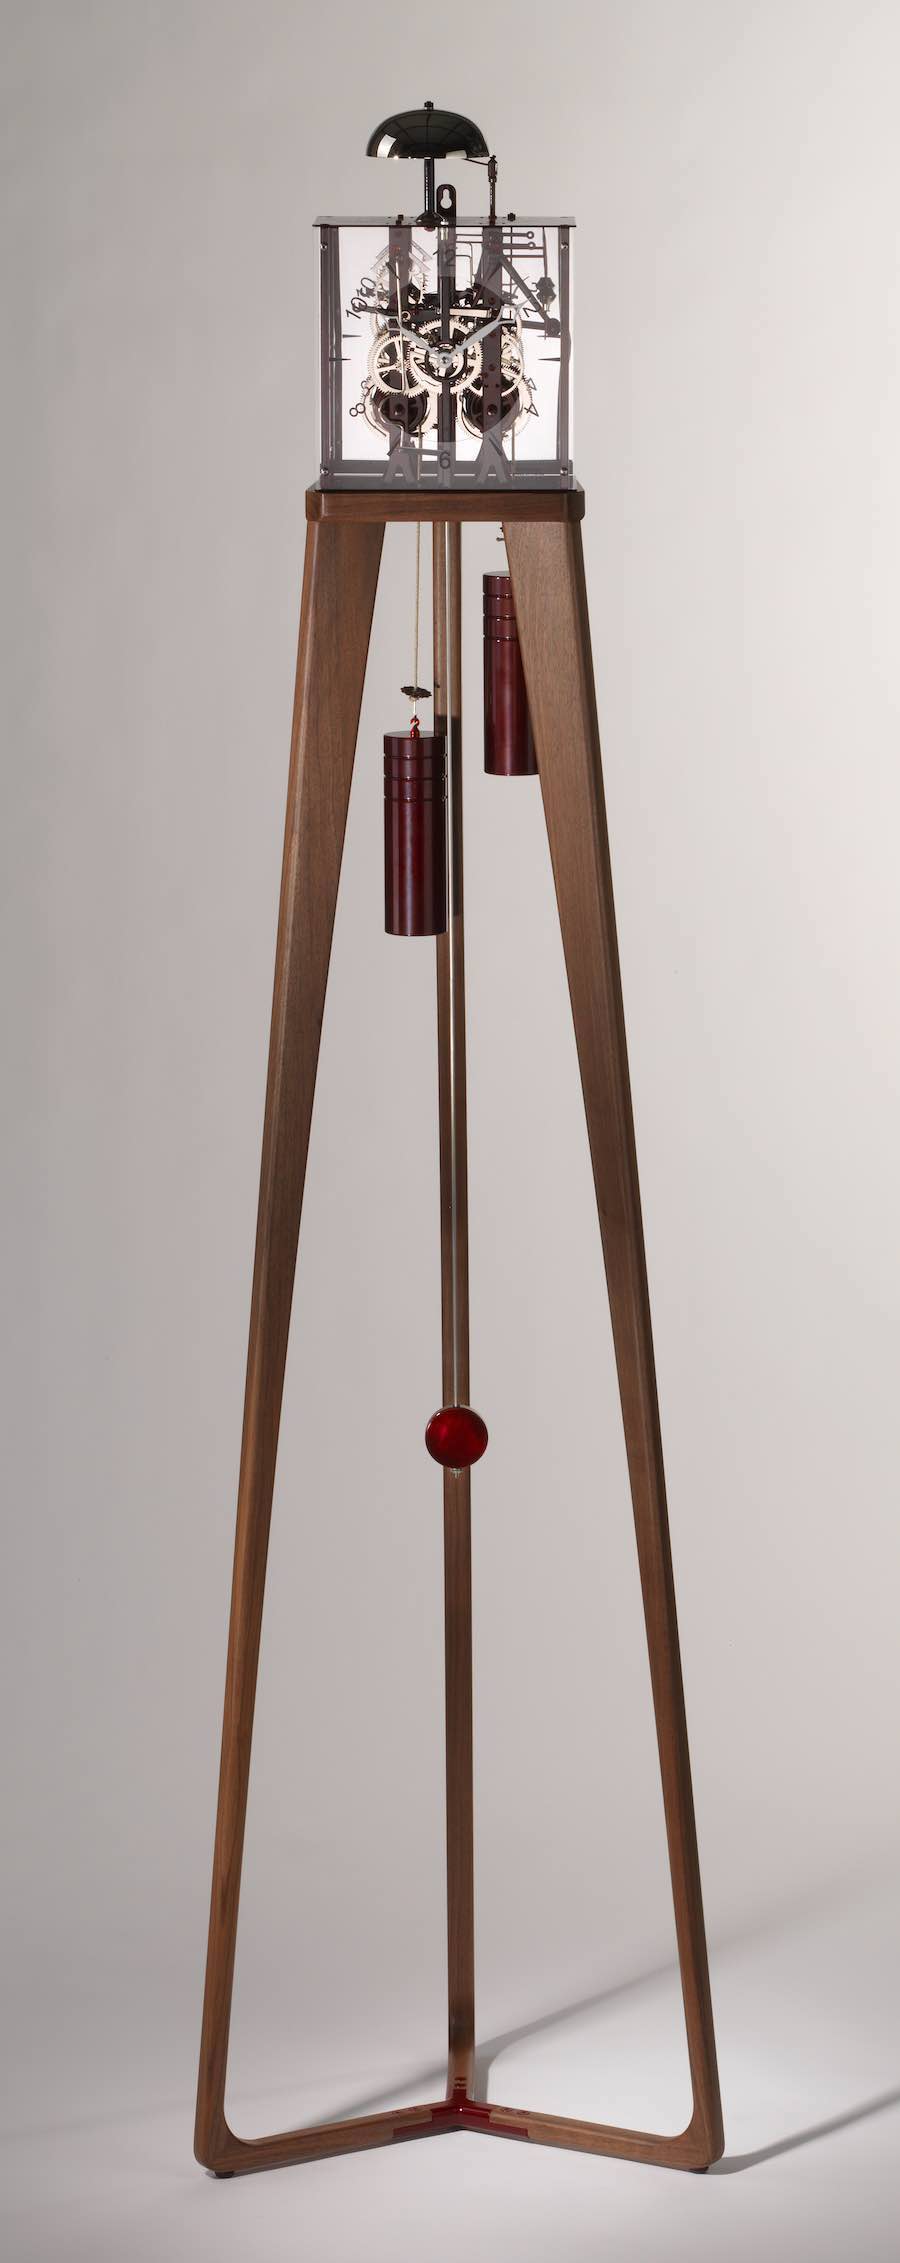 horloge pendule design moderne en bois - fabien masnada 2 ébéniste annecy